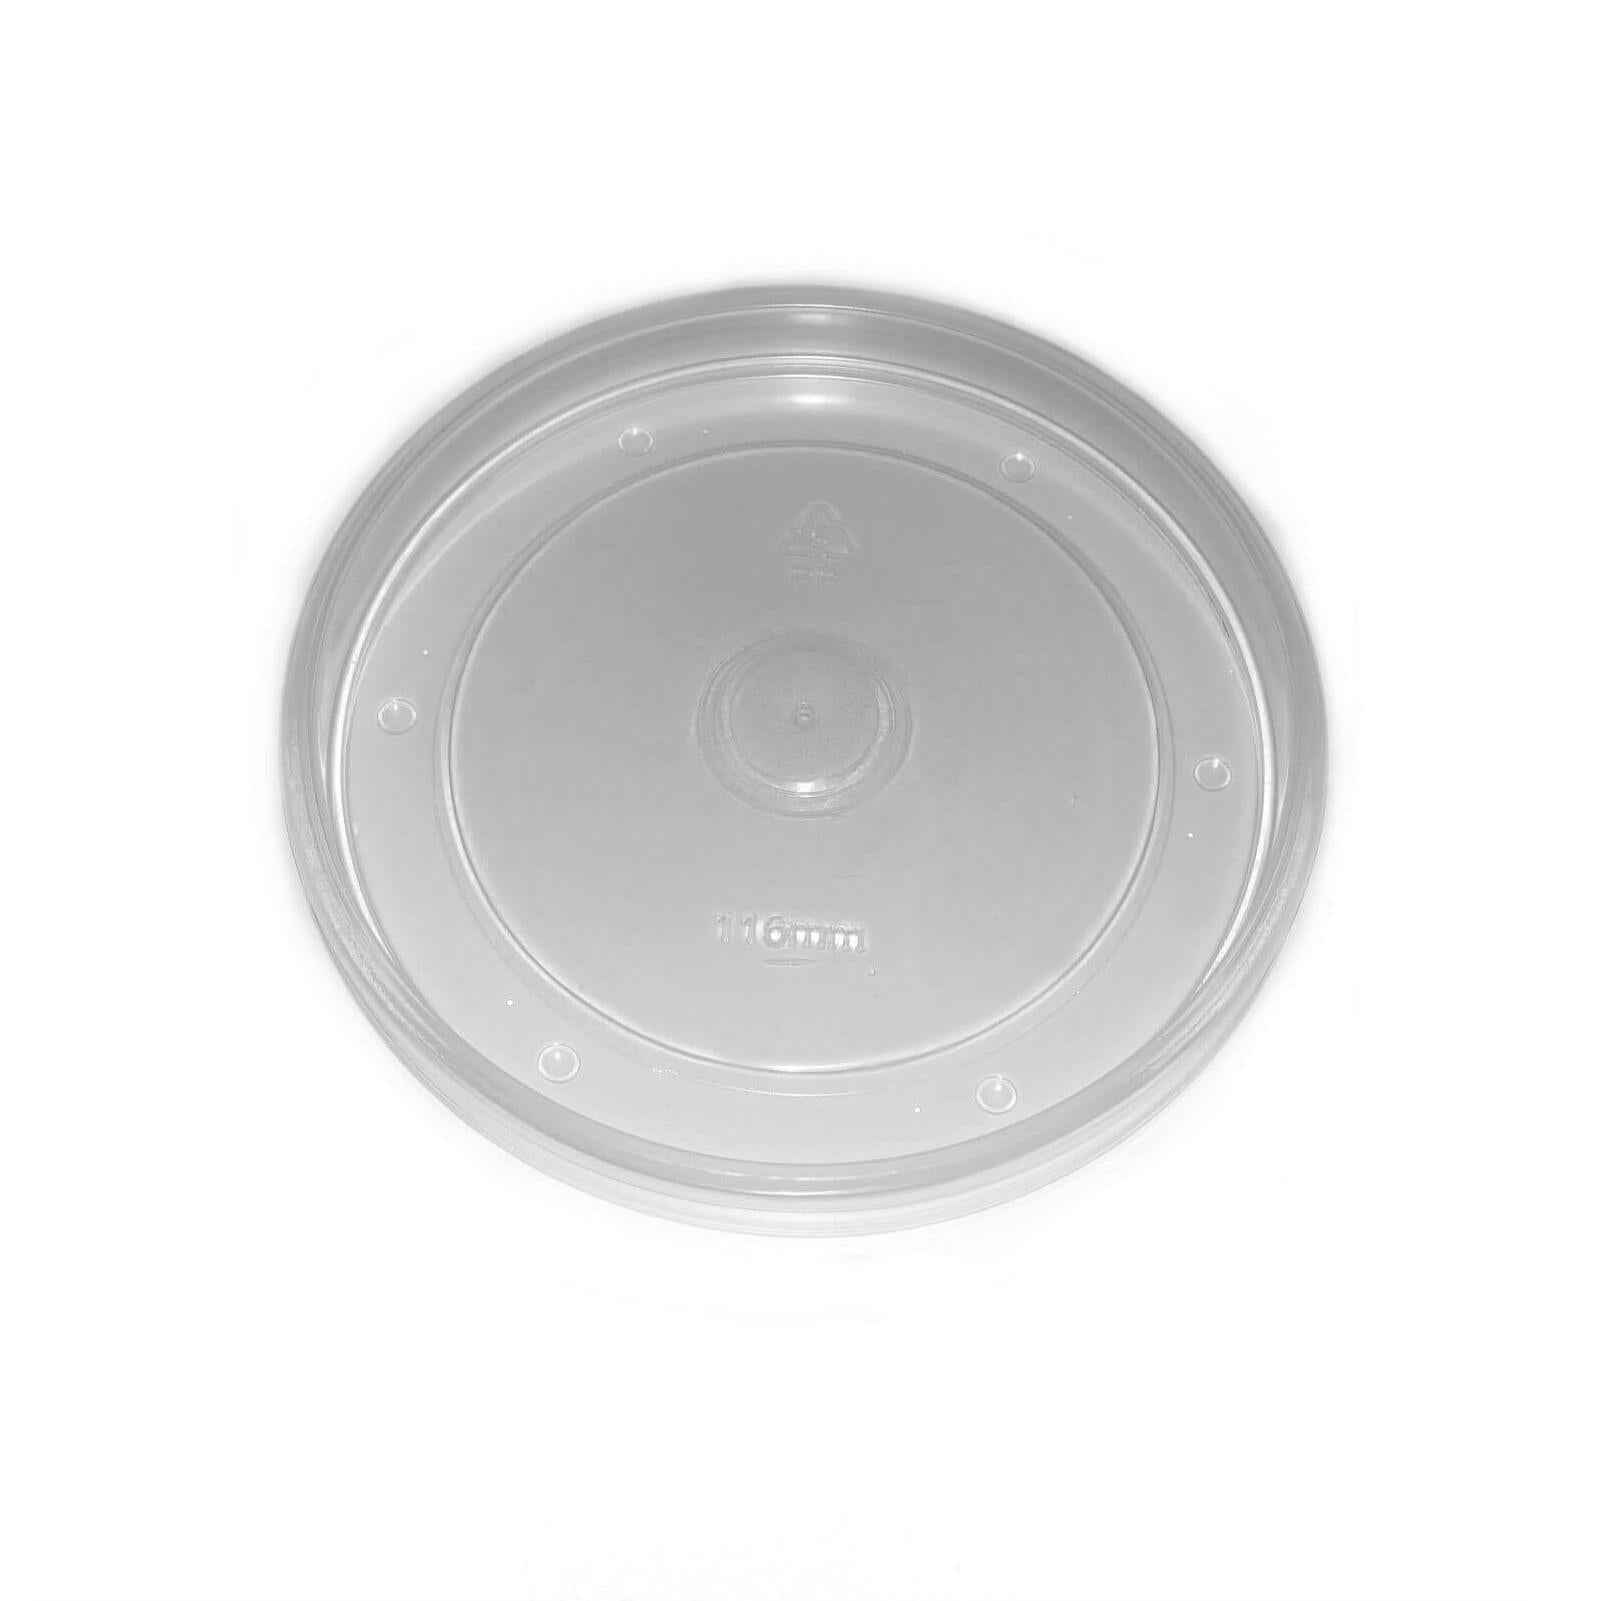 PP Lids 98 mm - fits 26/32oz bowl